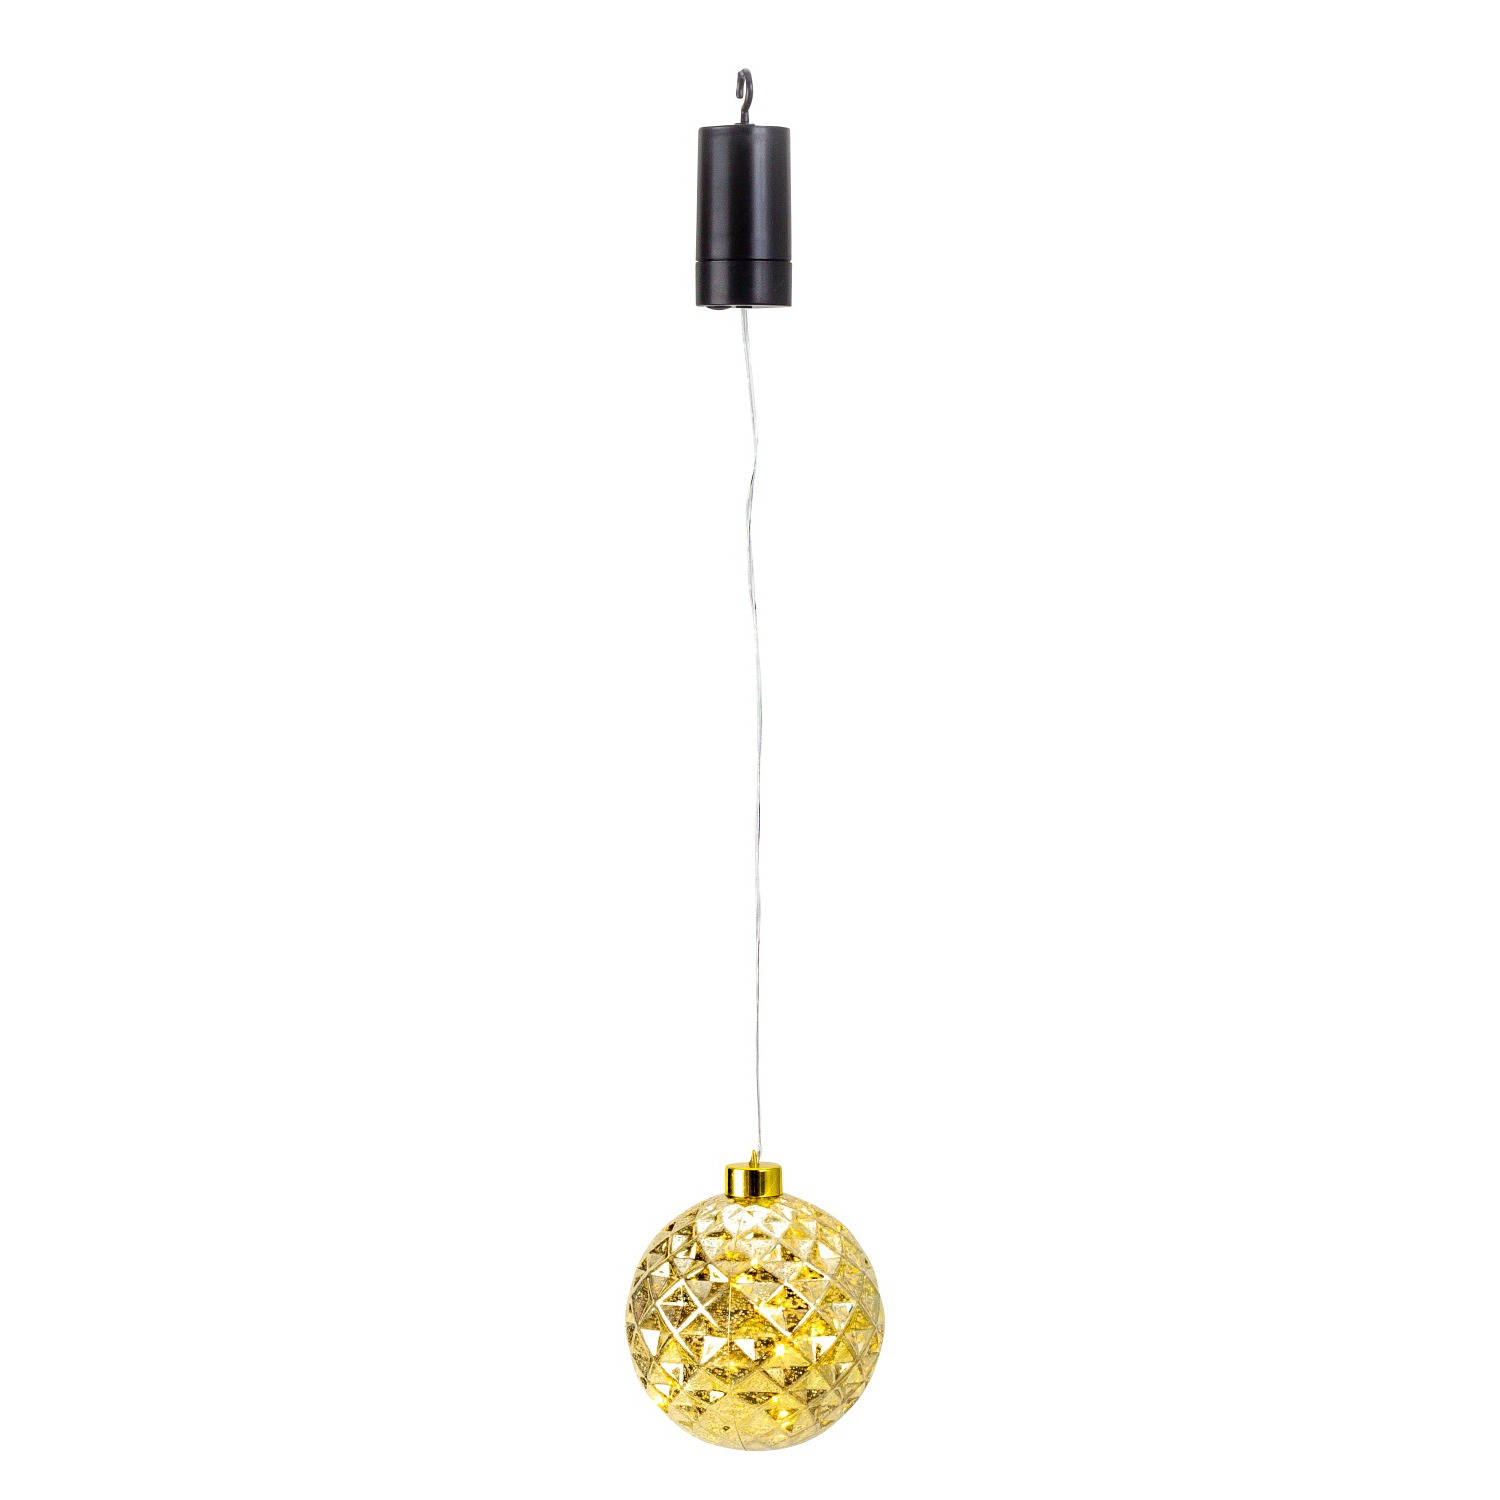 IKO kerstbal goud met led verlichting- D12 cm aan draad kerstverlichting figuur